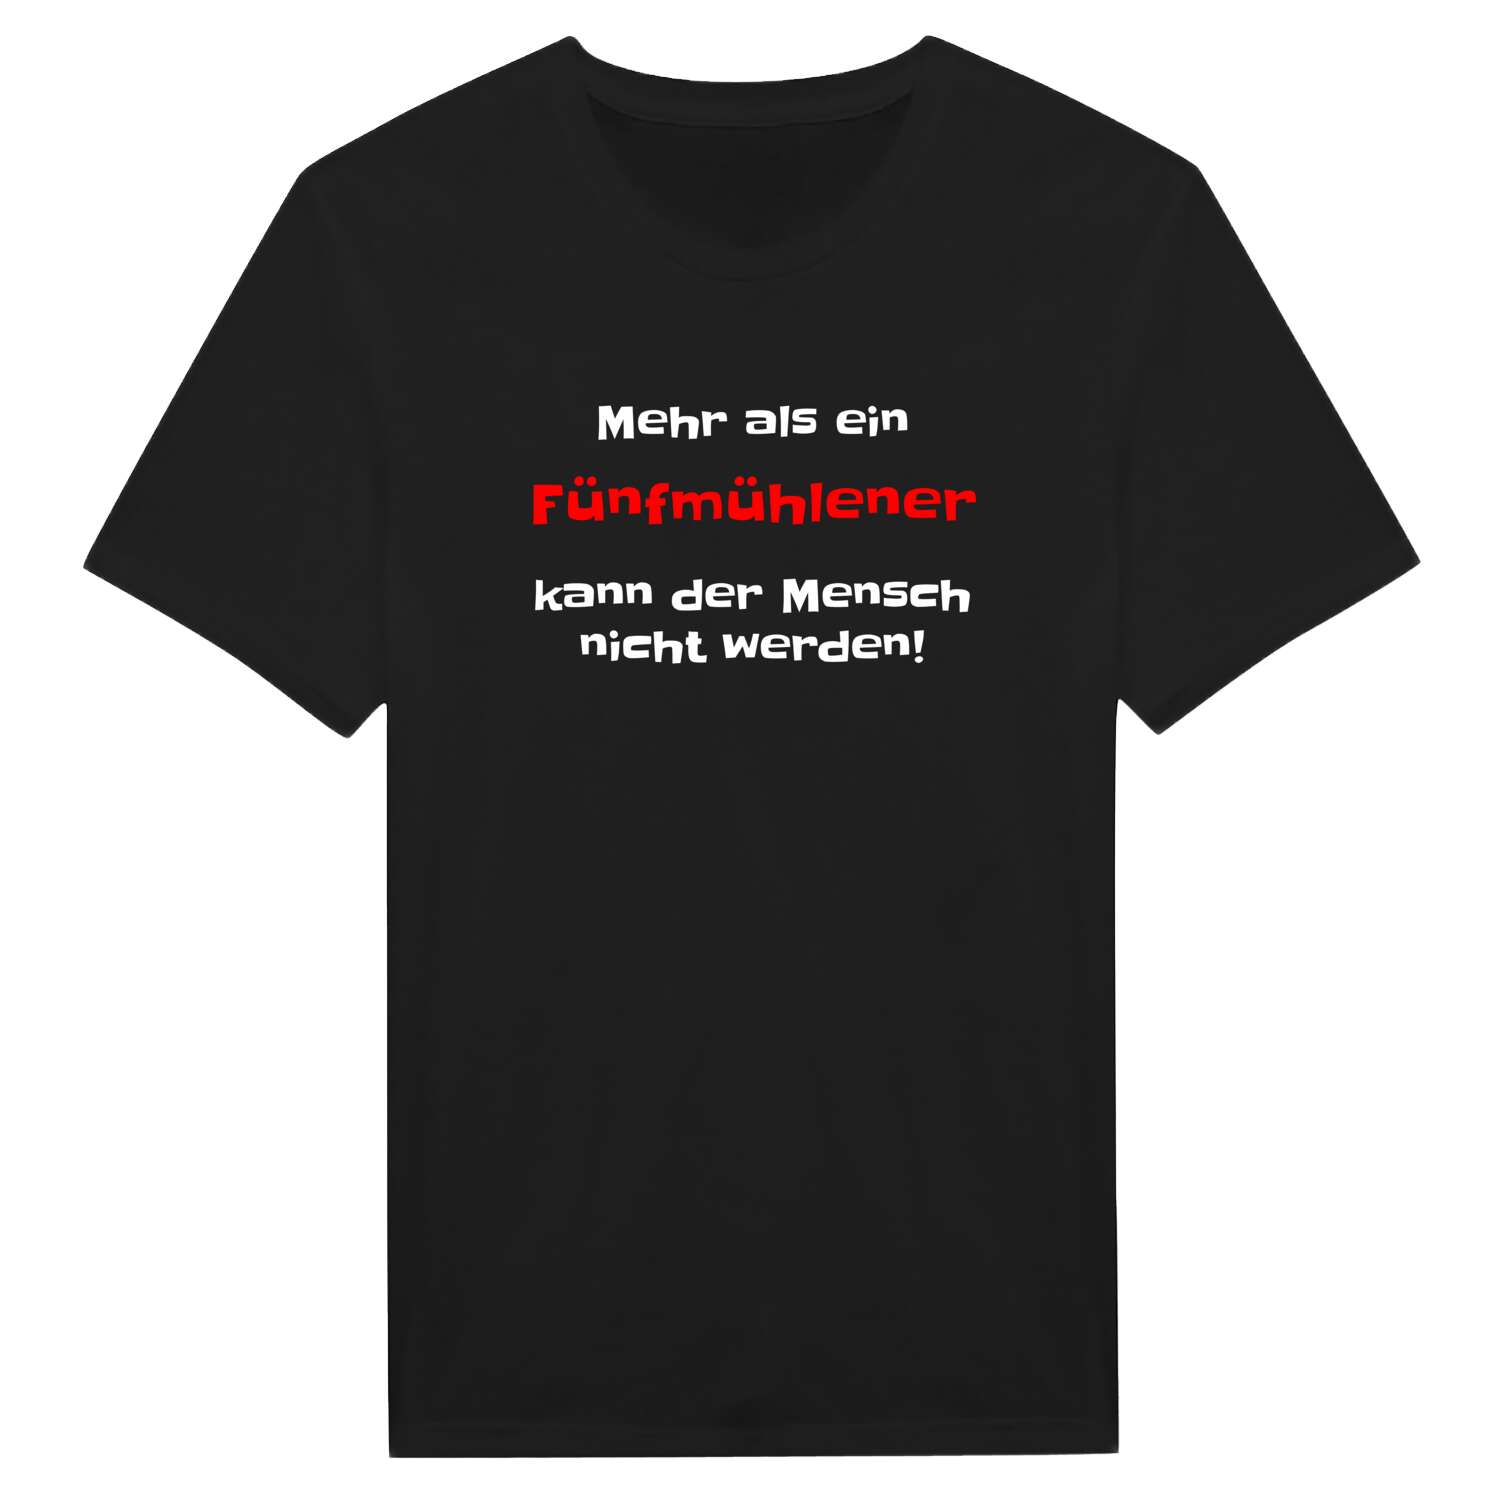 Fünfmühlen T-Shirt »Mehr als ein«